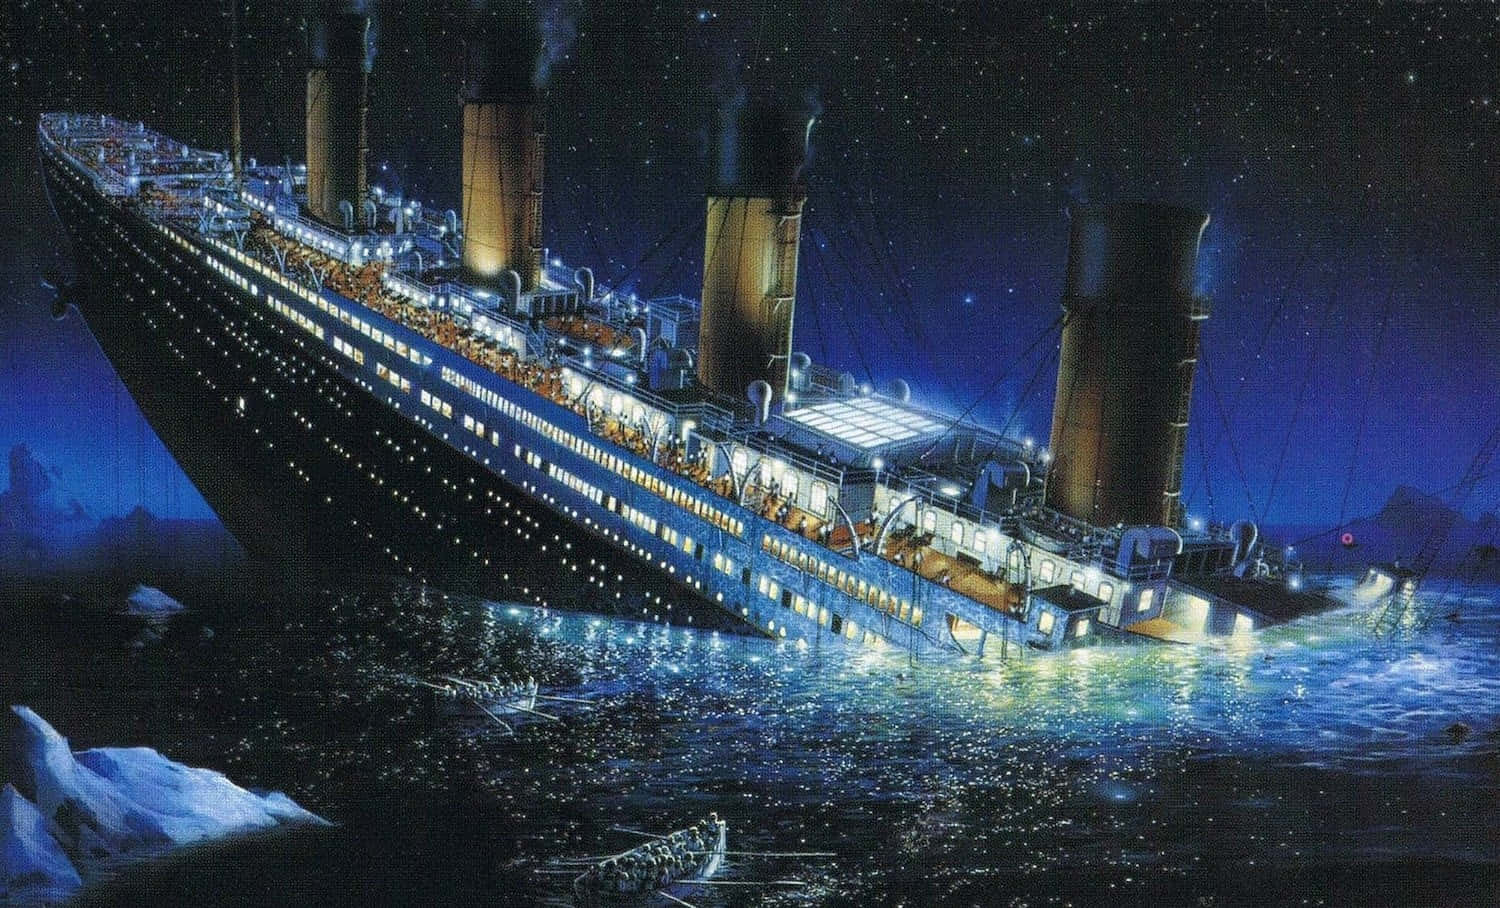 Dasikonische Titanic-schiff Segelt Durch Offene Gewässer.